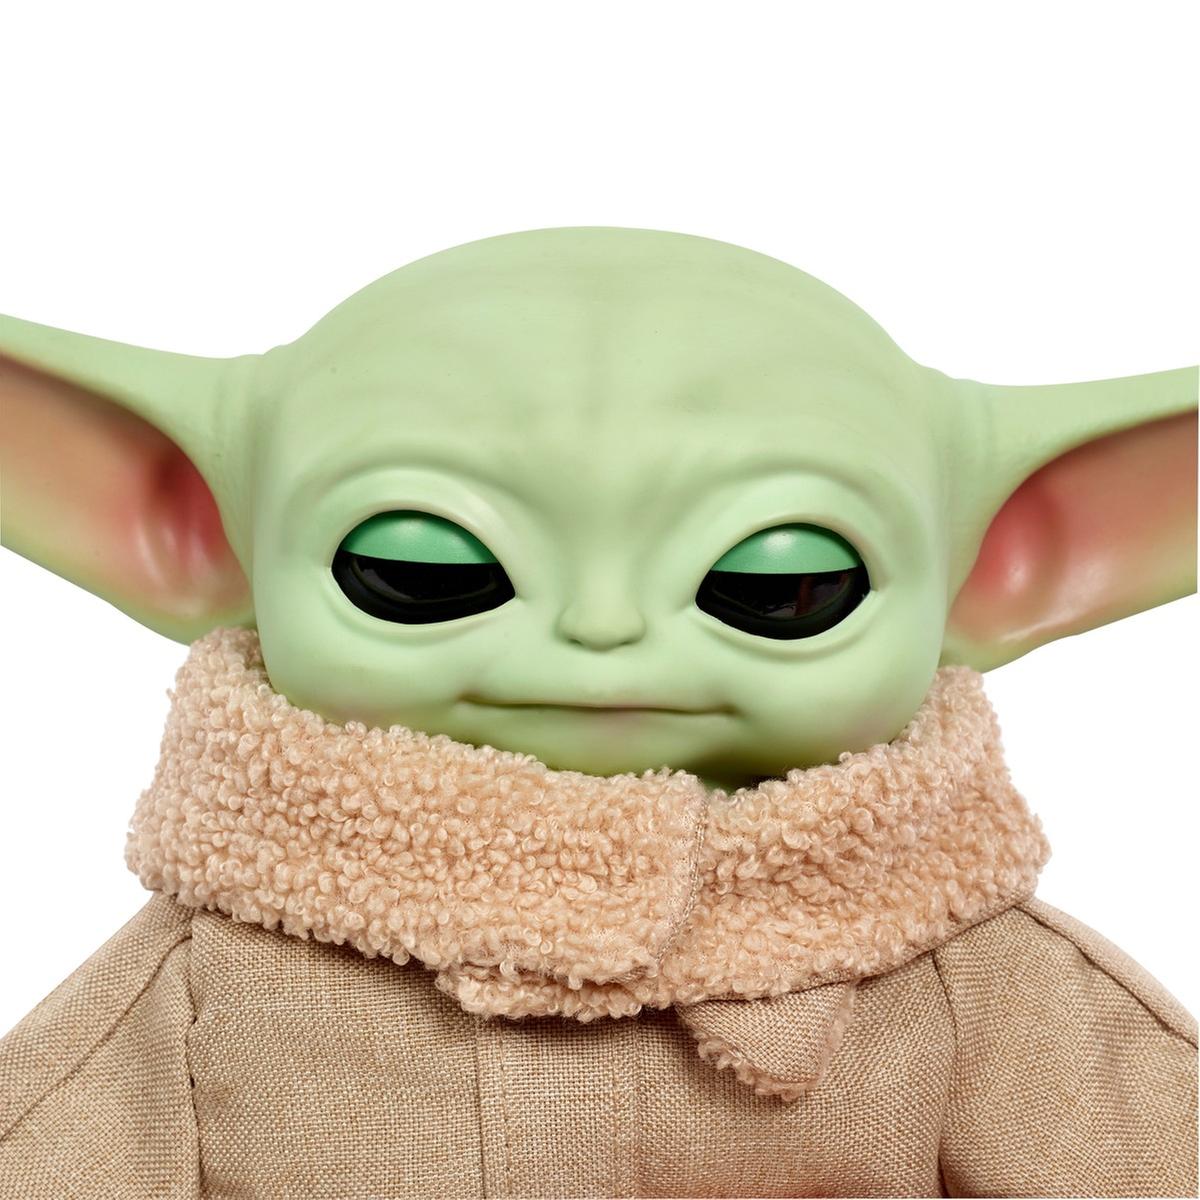 Peluche Baby Yoda Mandalorian ⋆ Tienda Friki Online